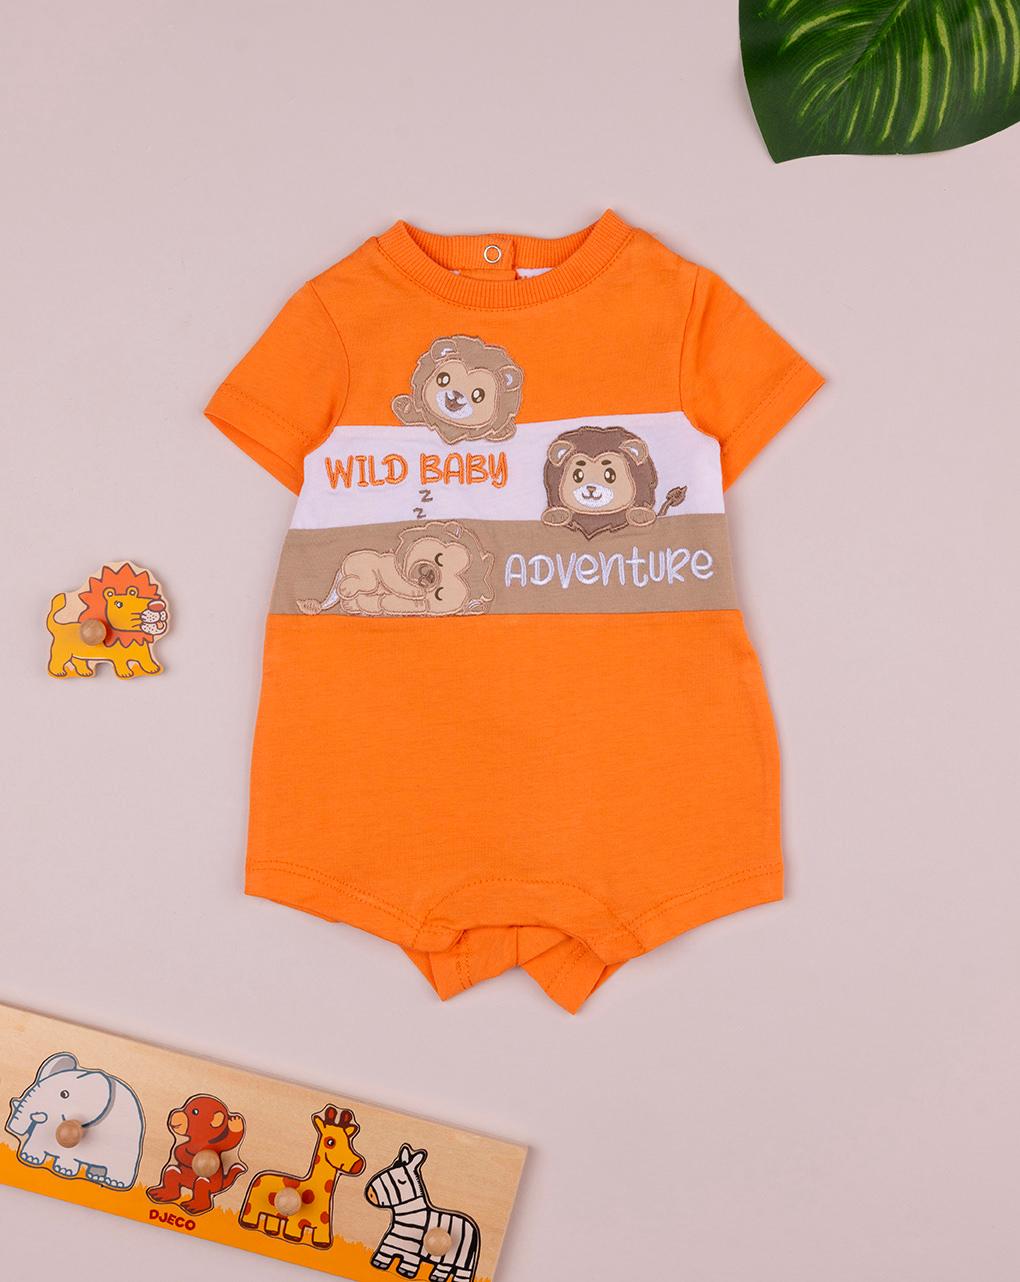 βρεφικό φορμάκι πορτοκαλί wild baby adventure για αγόρι